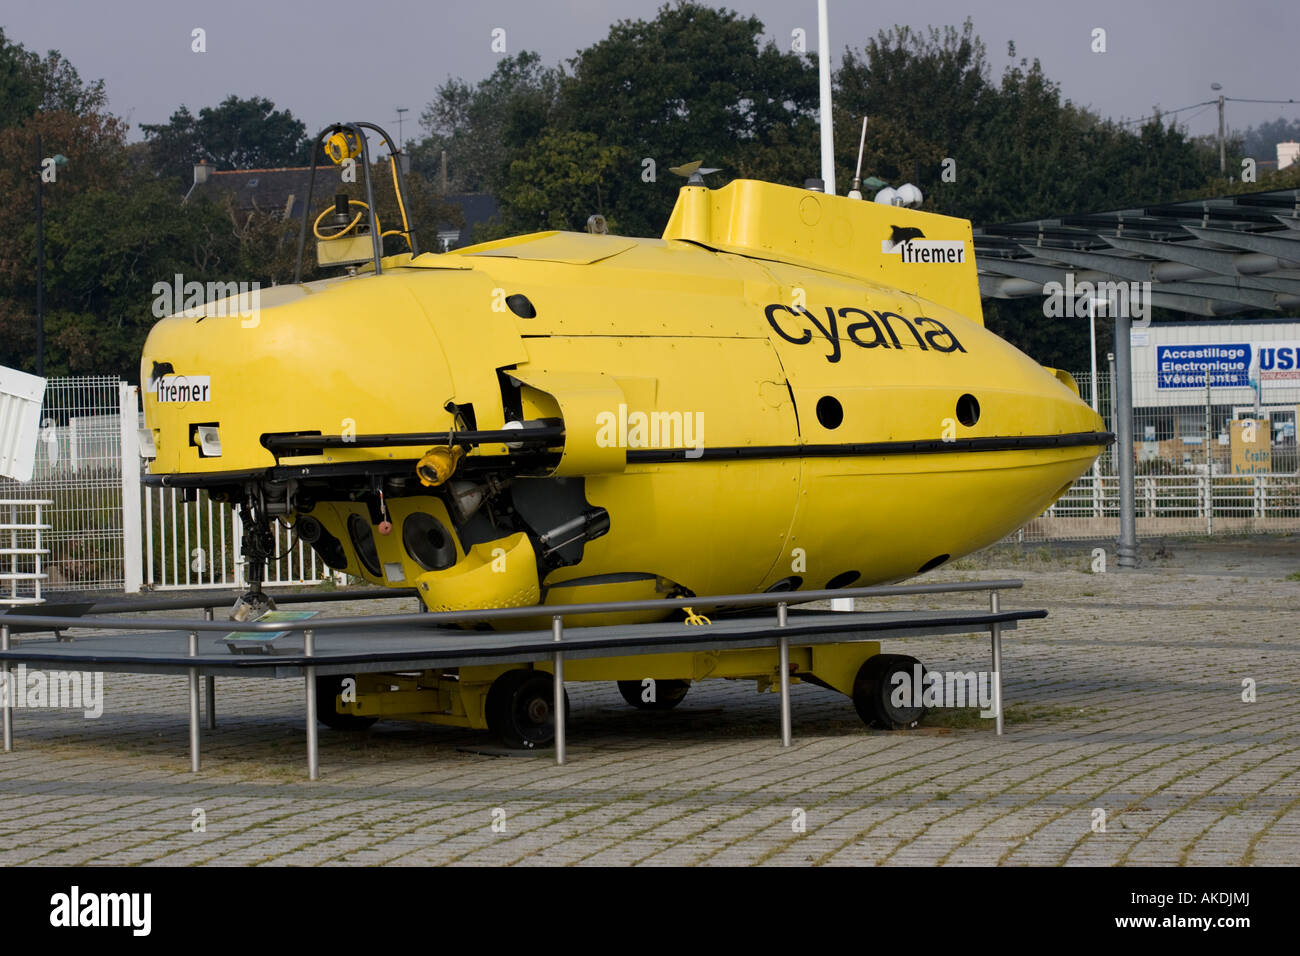 Gelben u-Boot-Cyana Ilfremer Unterwasser-Erkundung Fahrzeug Oceanopolis Brest-Bretagne-Frankreich Stockfoto